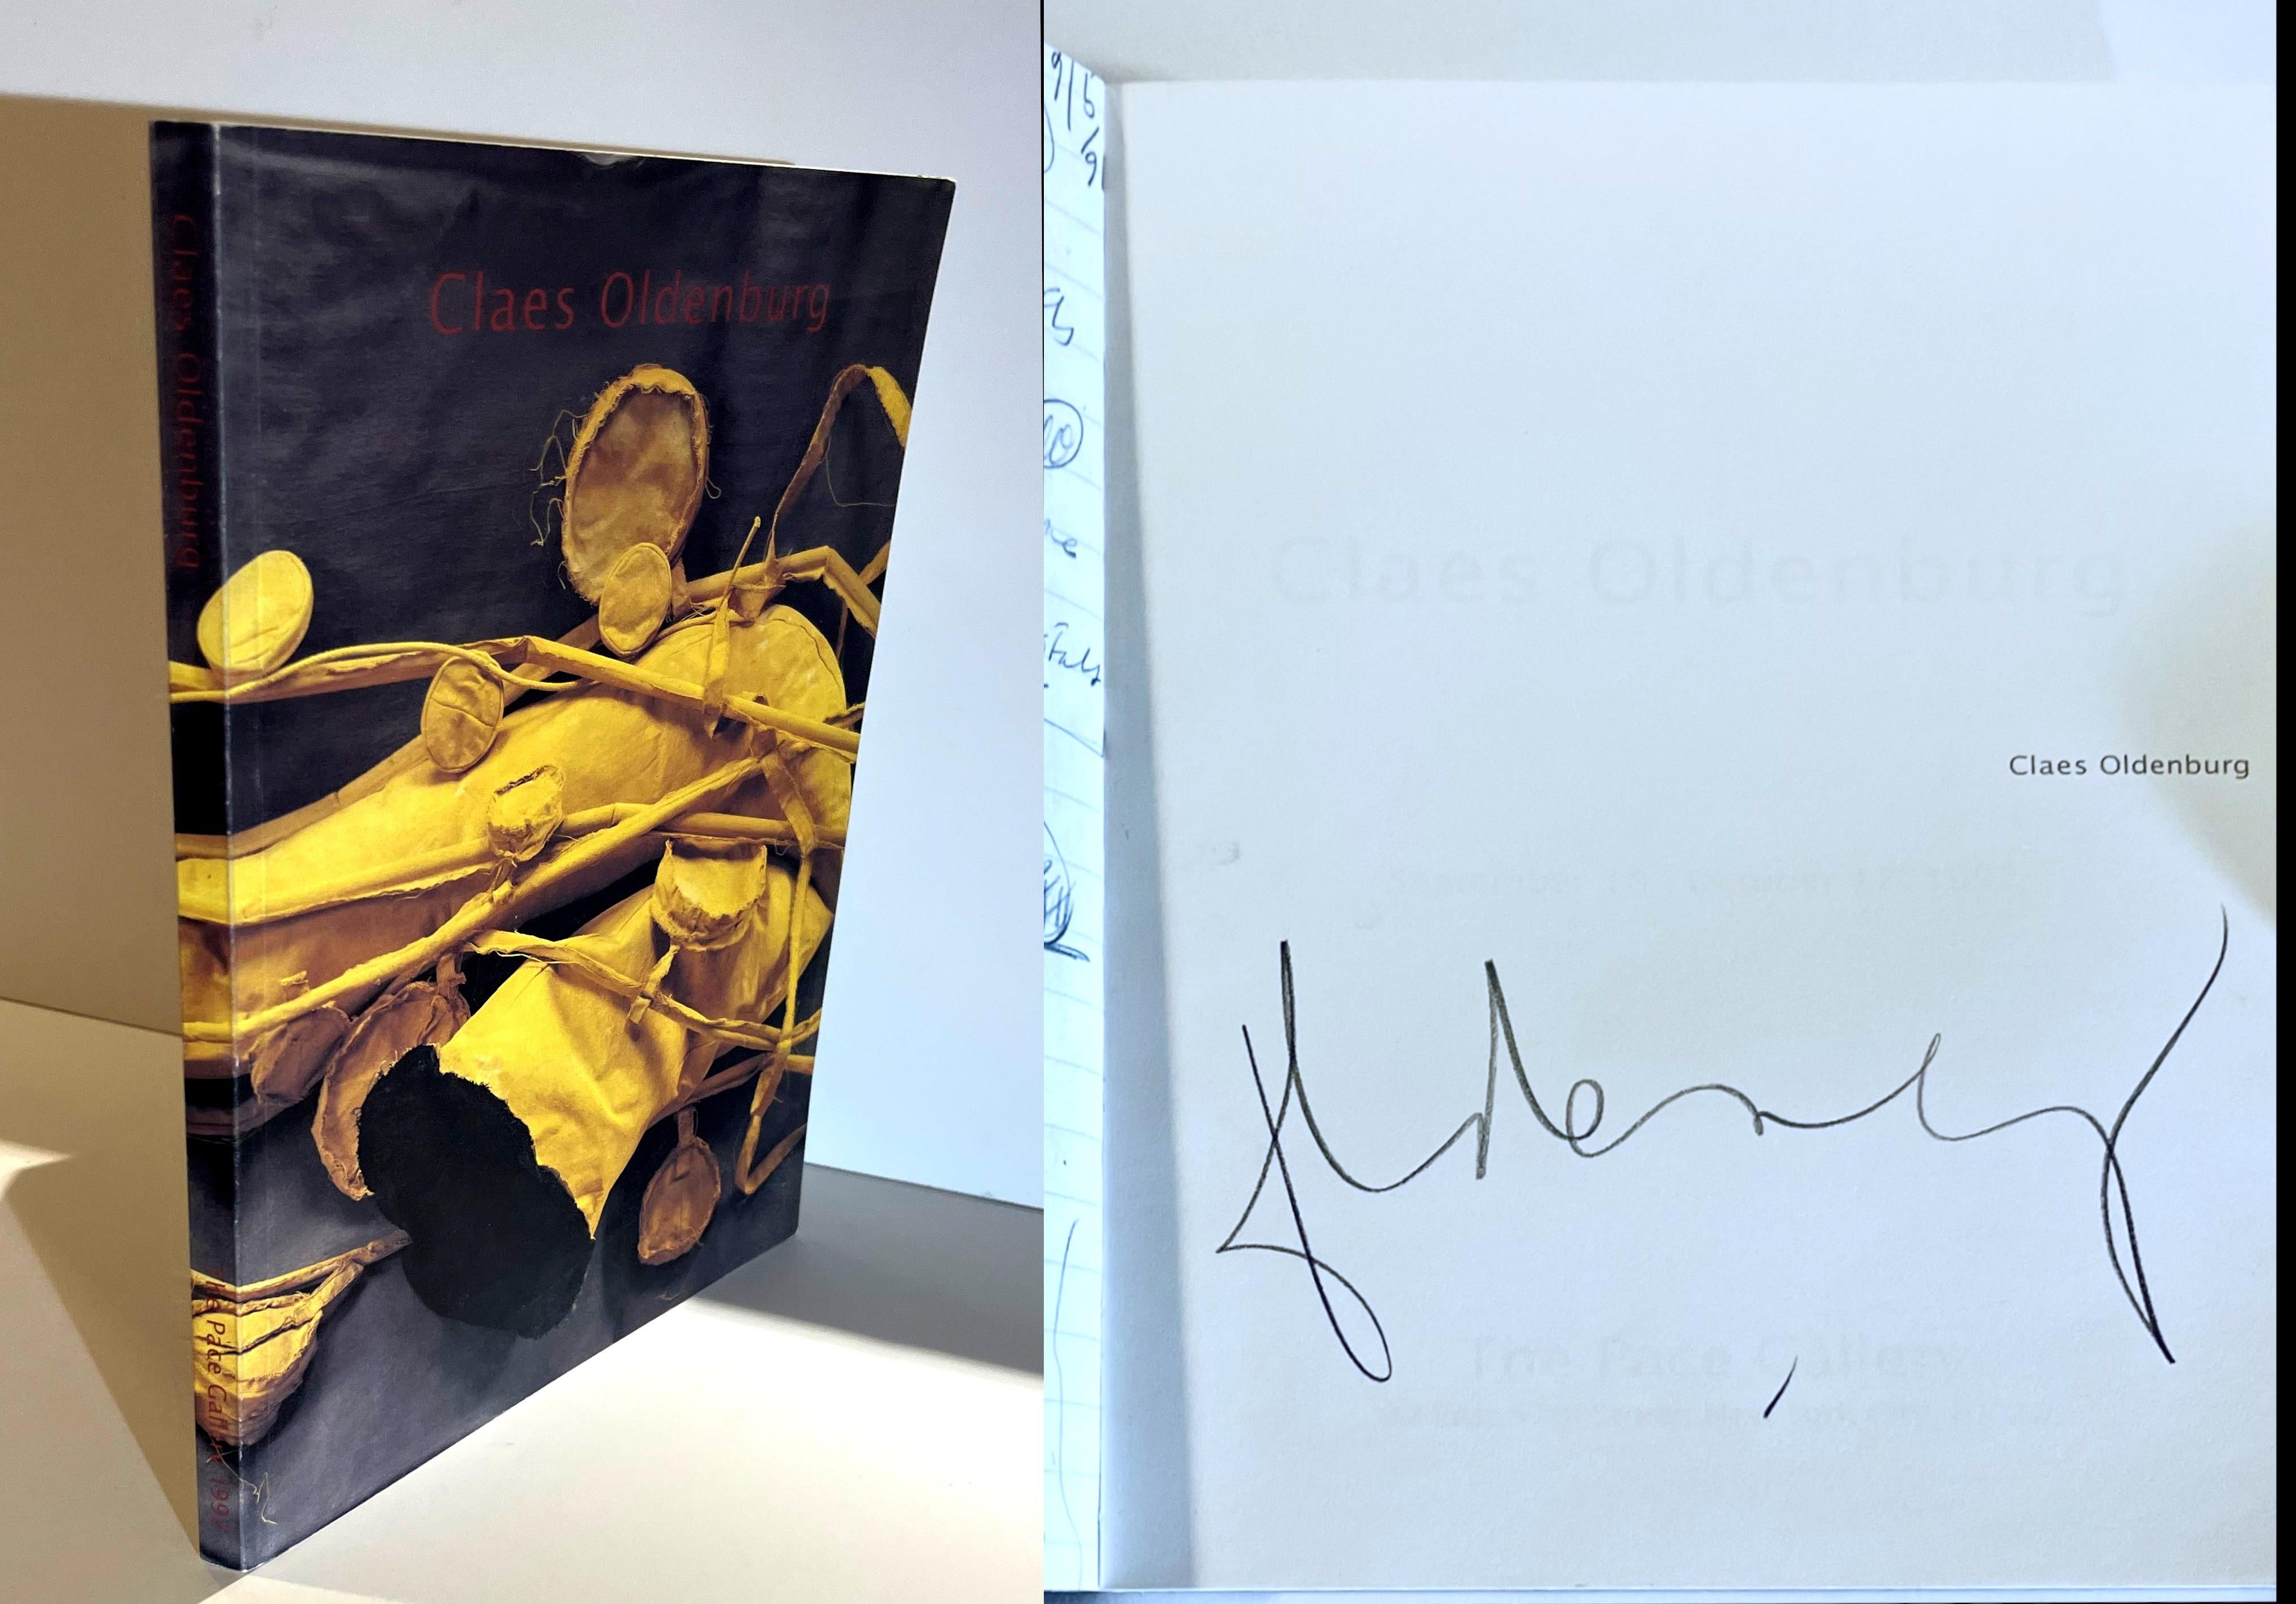 Claes Oldenburg (signé à la main par Claes Oldenburg), 1992
Catalogue broché à couverture rigide (signé à la main par Claes Oldenburg)
signé à la main par Claes Oldenburg sur la demi-page de titre
11 3/4 × 9 × 3/4 pouces
(note : l'image principale a